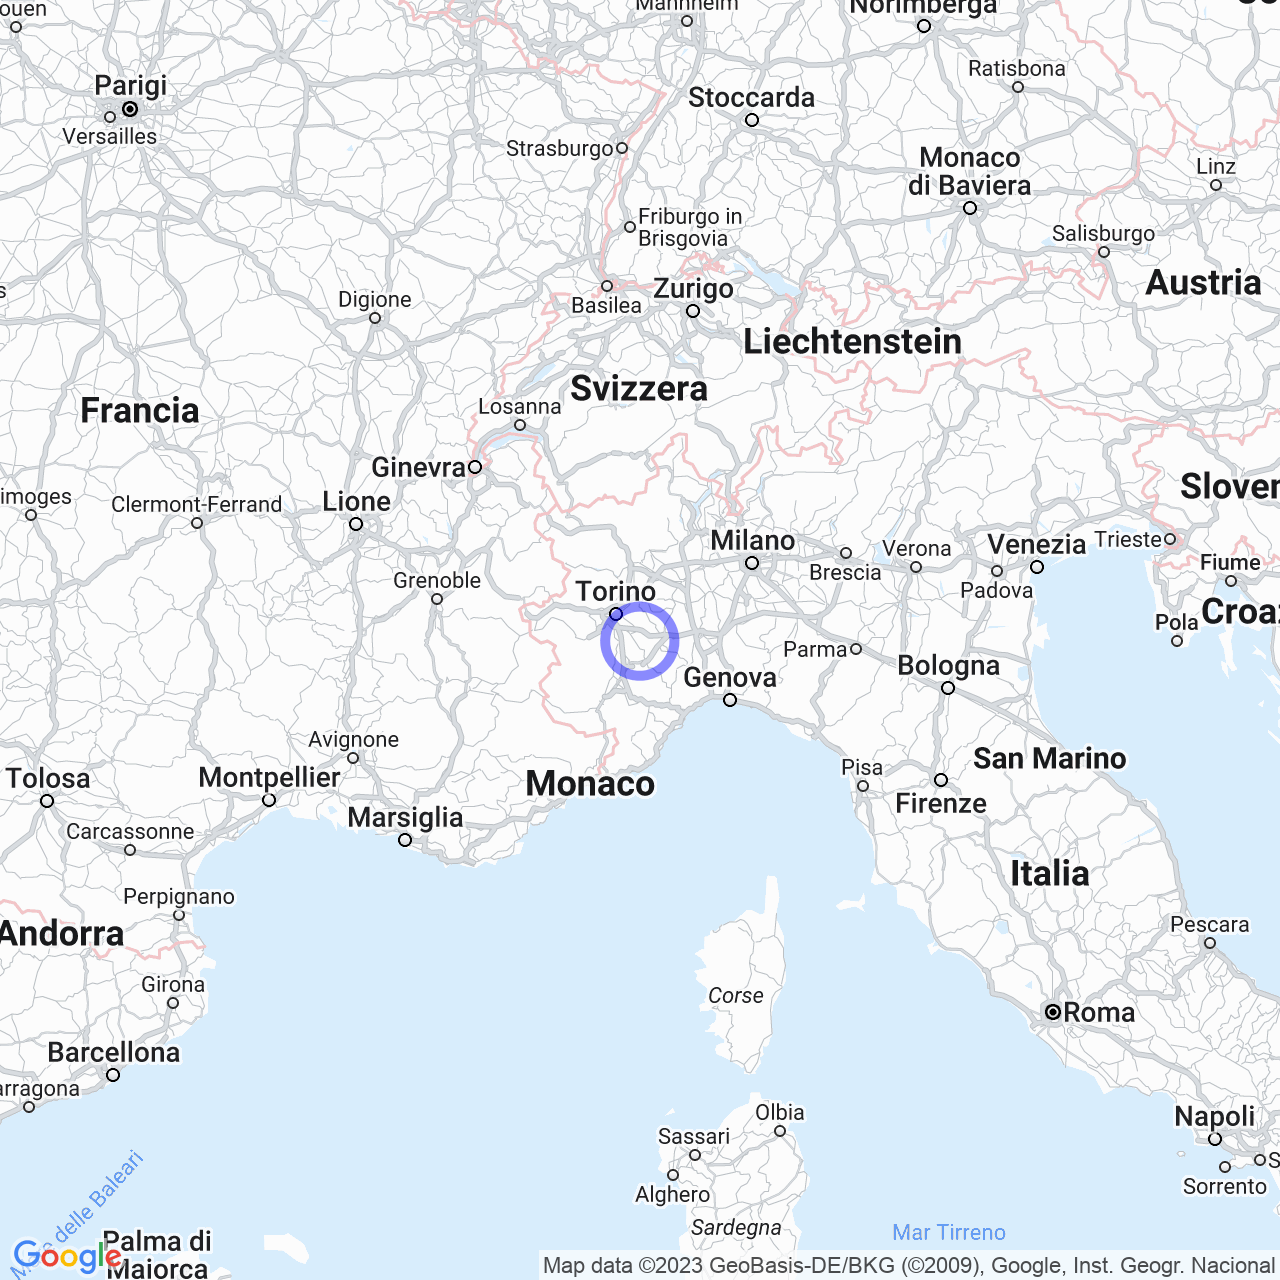 Cellarengo: Storia, Società e Cultura in Piemonte. map